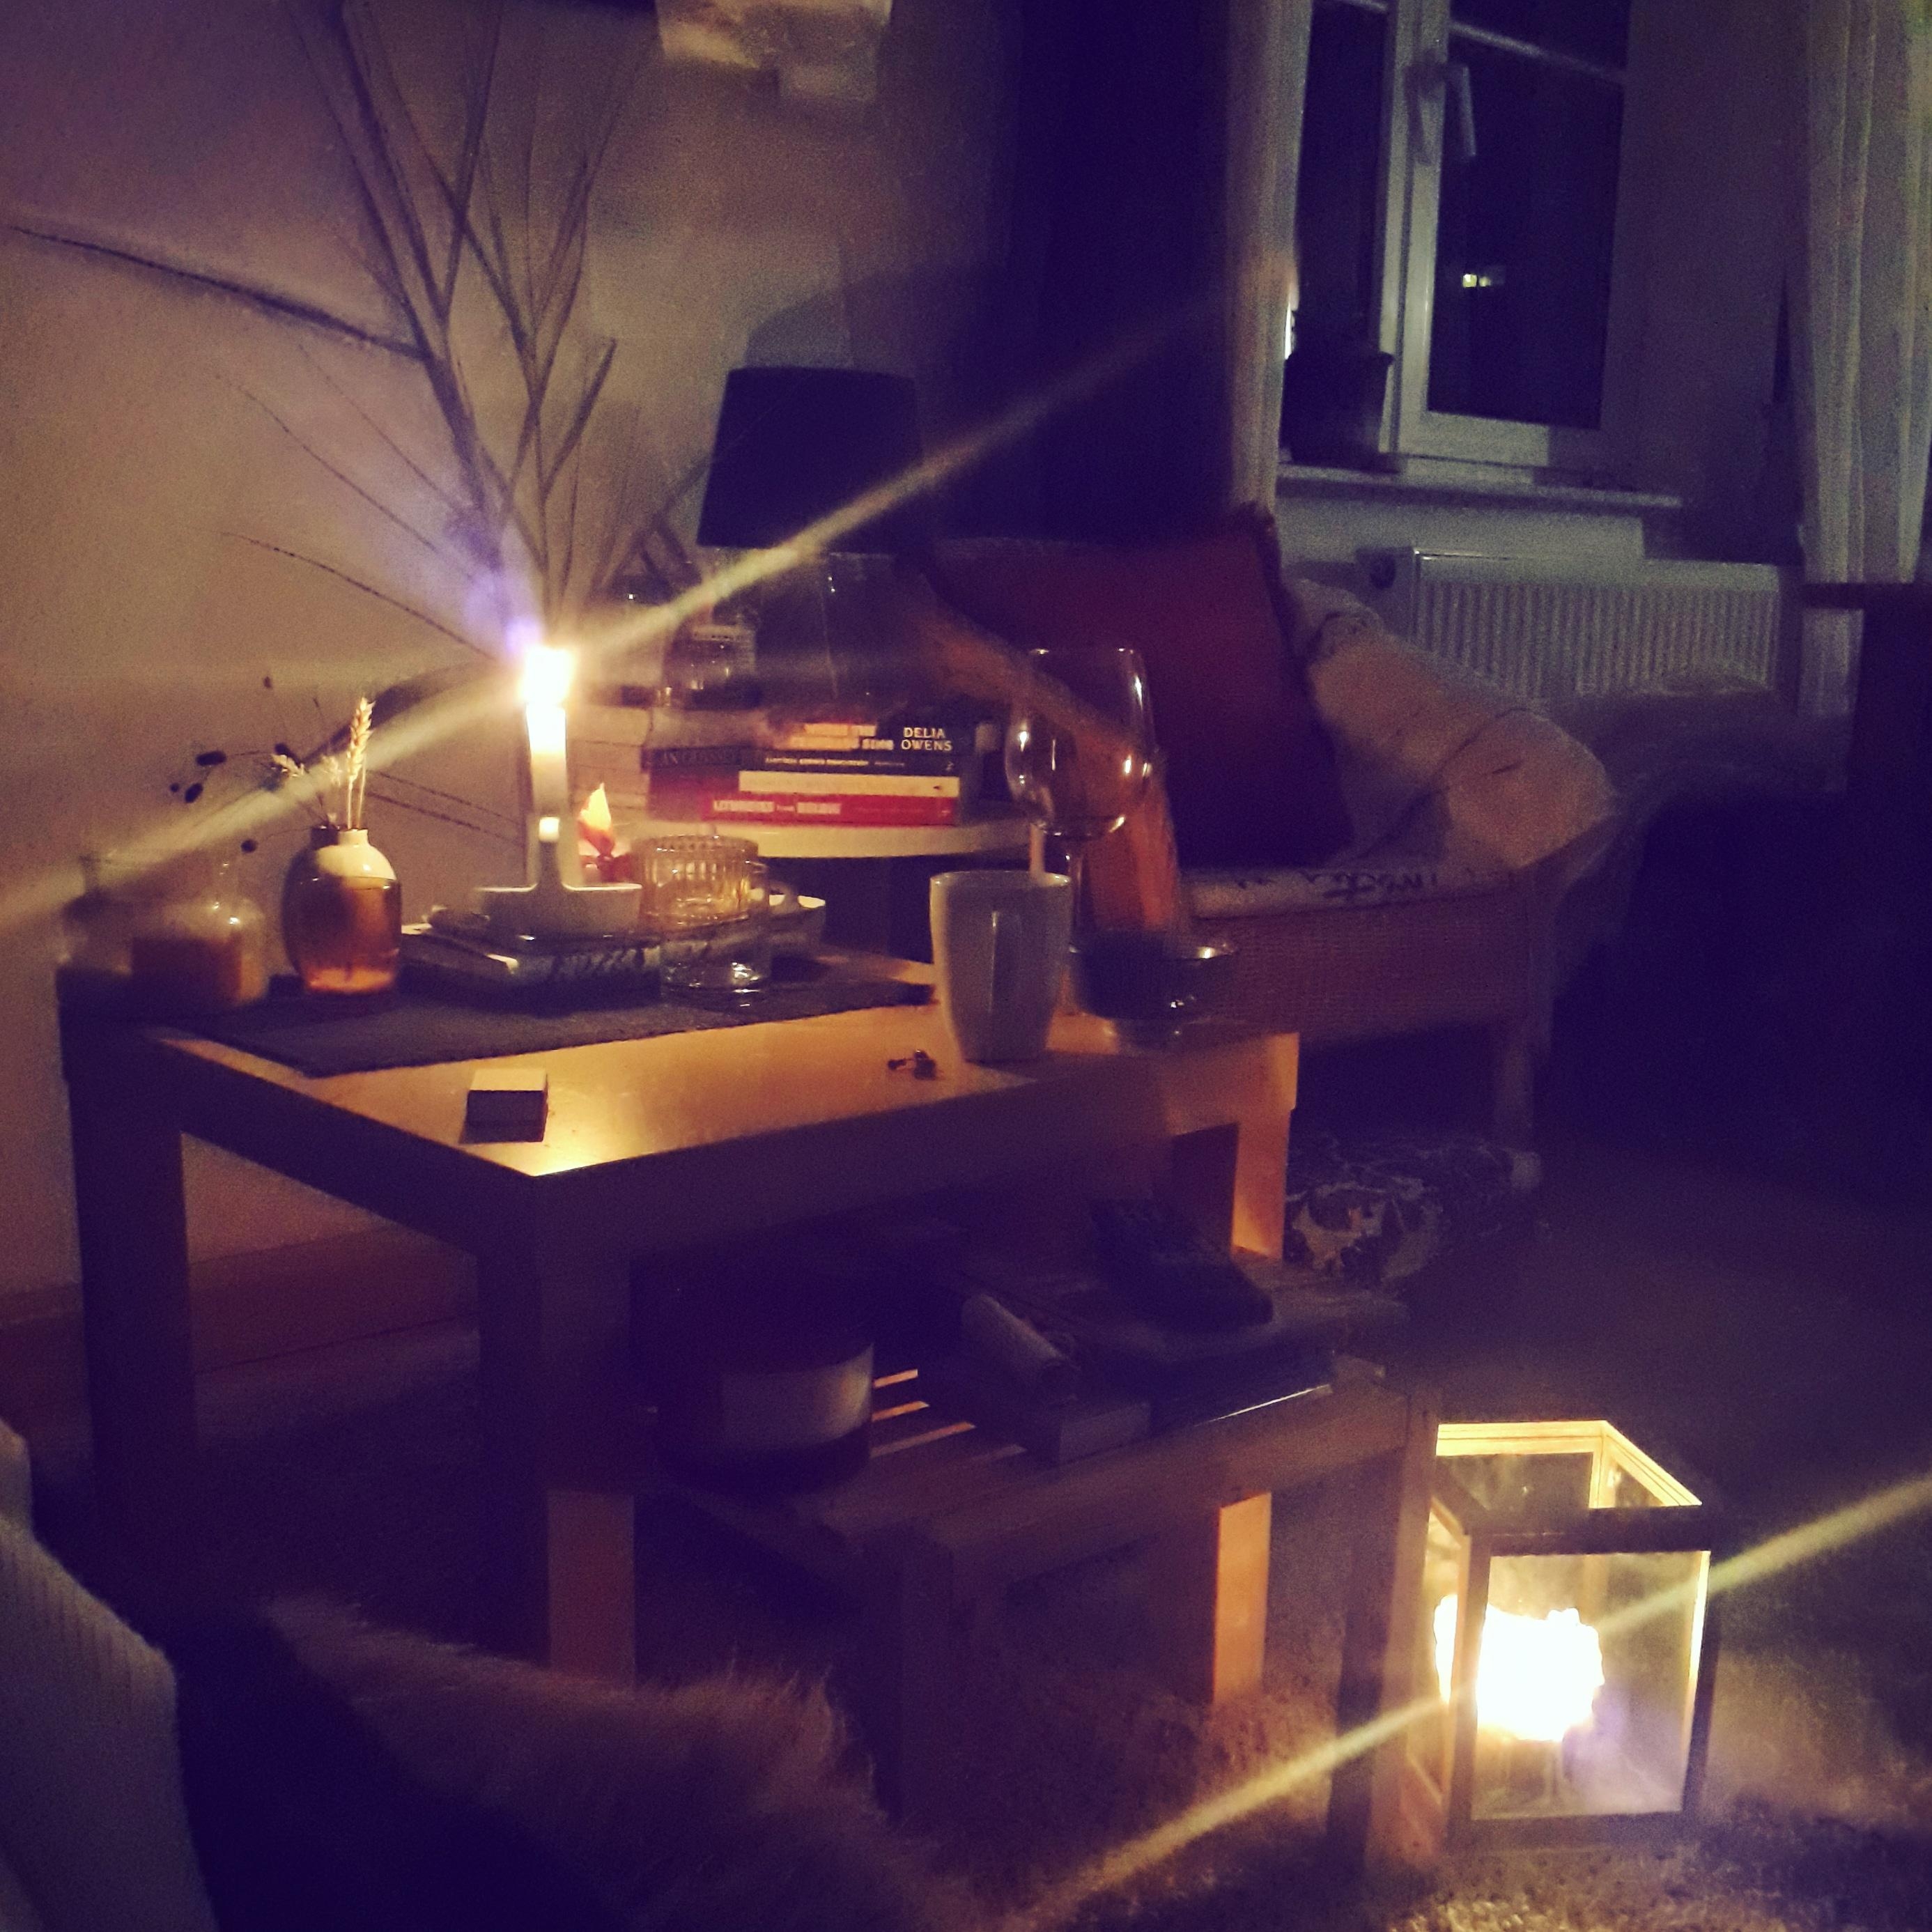 Freitagabend nach einer vollen Arbeitswoche - warmes Licht willkommen ♡ 
#candles #autumnvibes #couch #